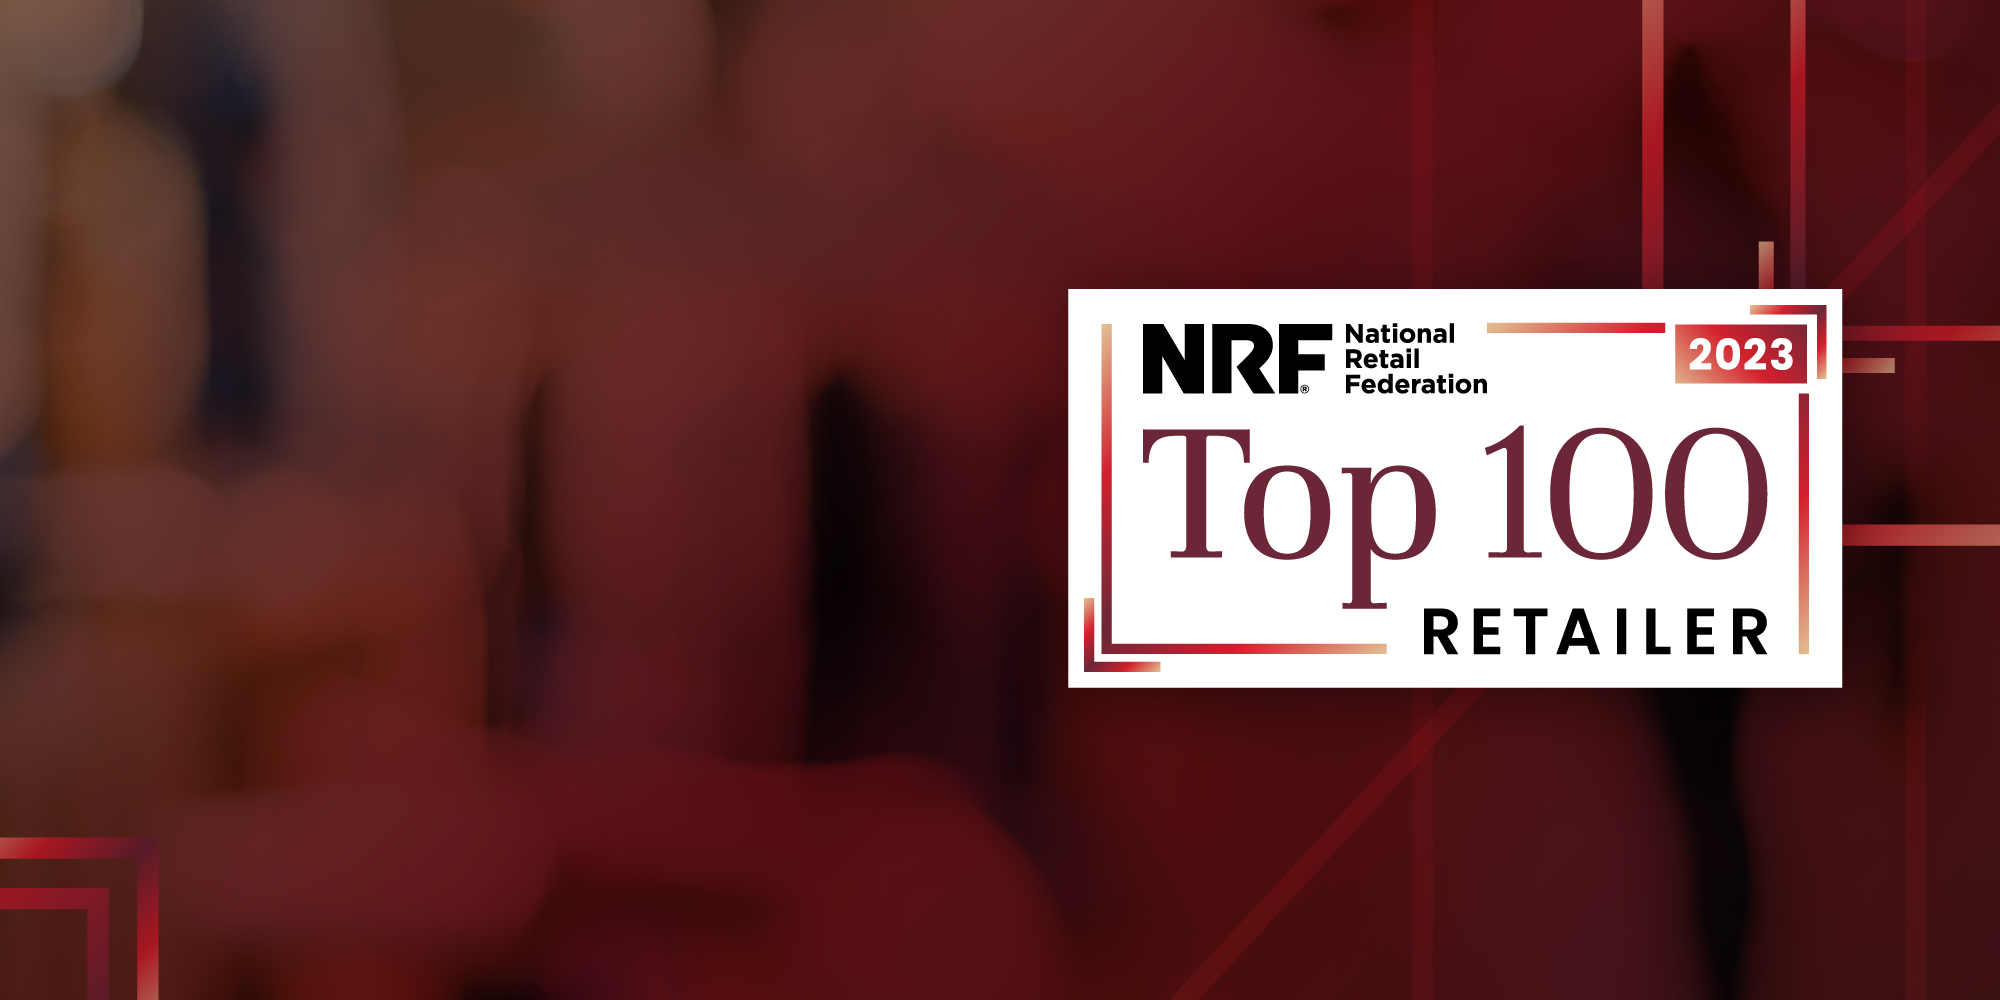 NRF Top 100 Retailers 2023 List